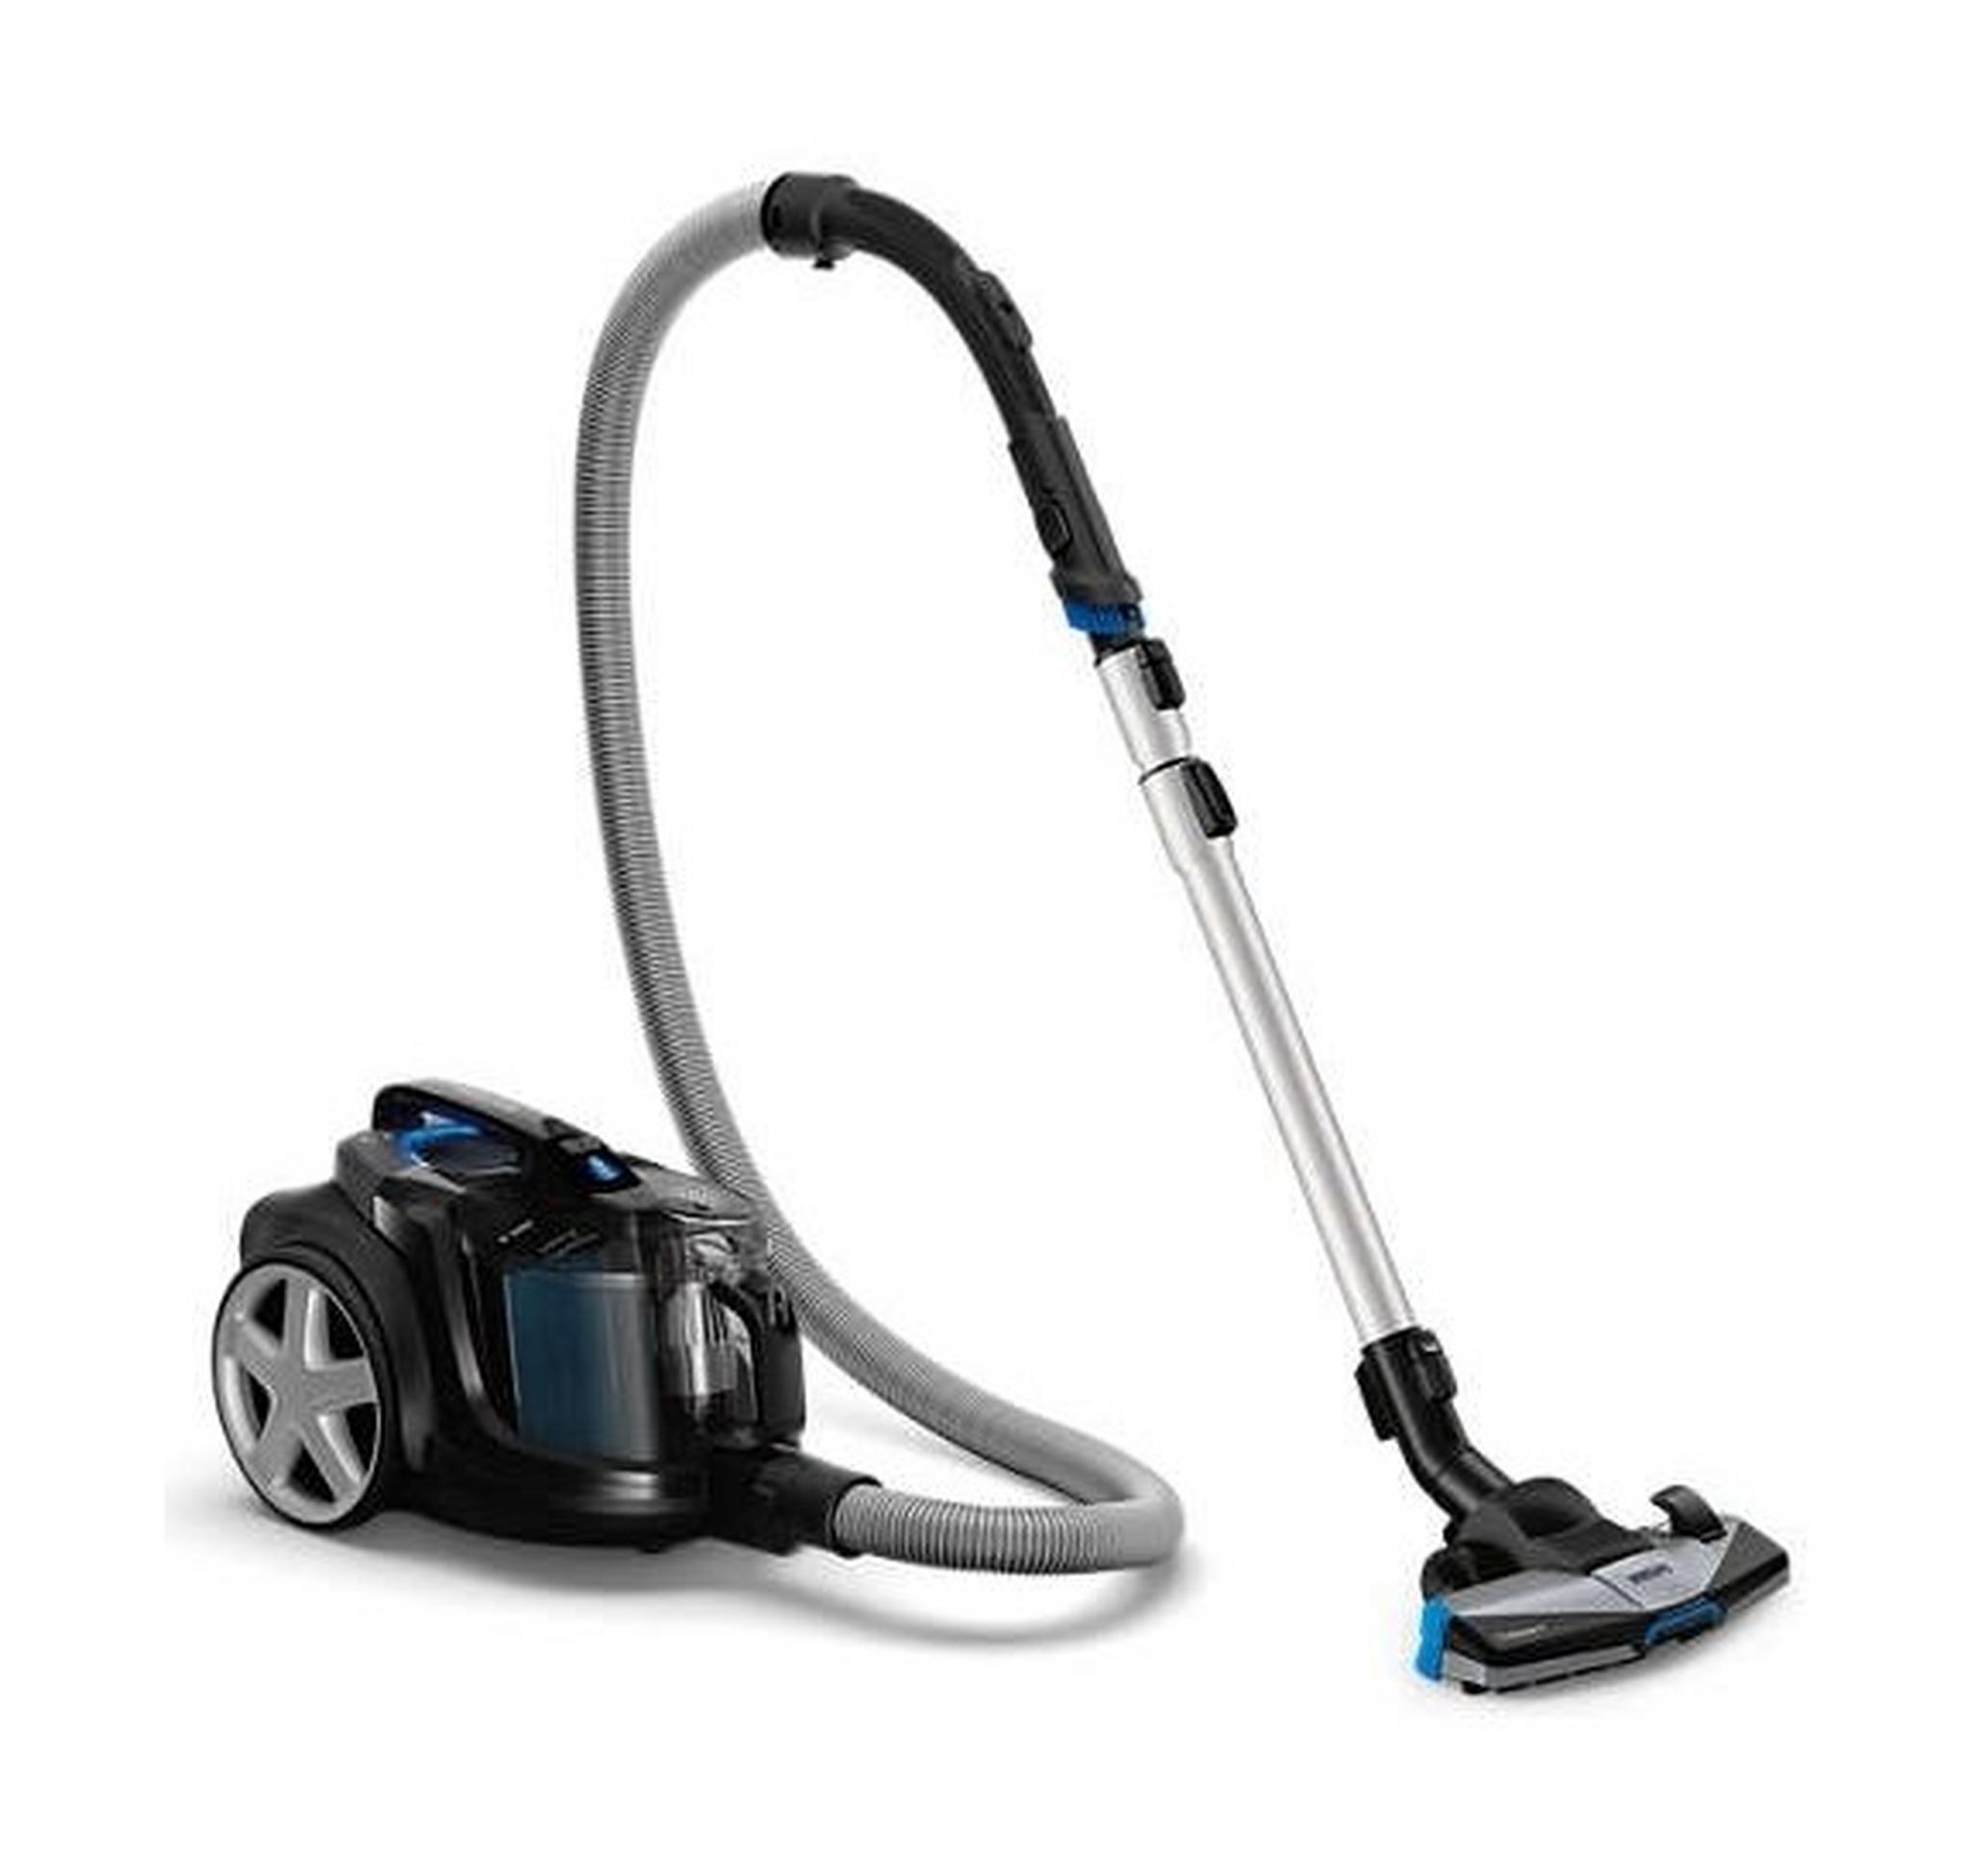 Philips PowerPro Expert Bagless Vacuum Cleaner,2100W, 2Liters, FC9732 - Black